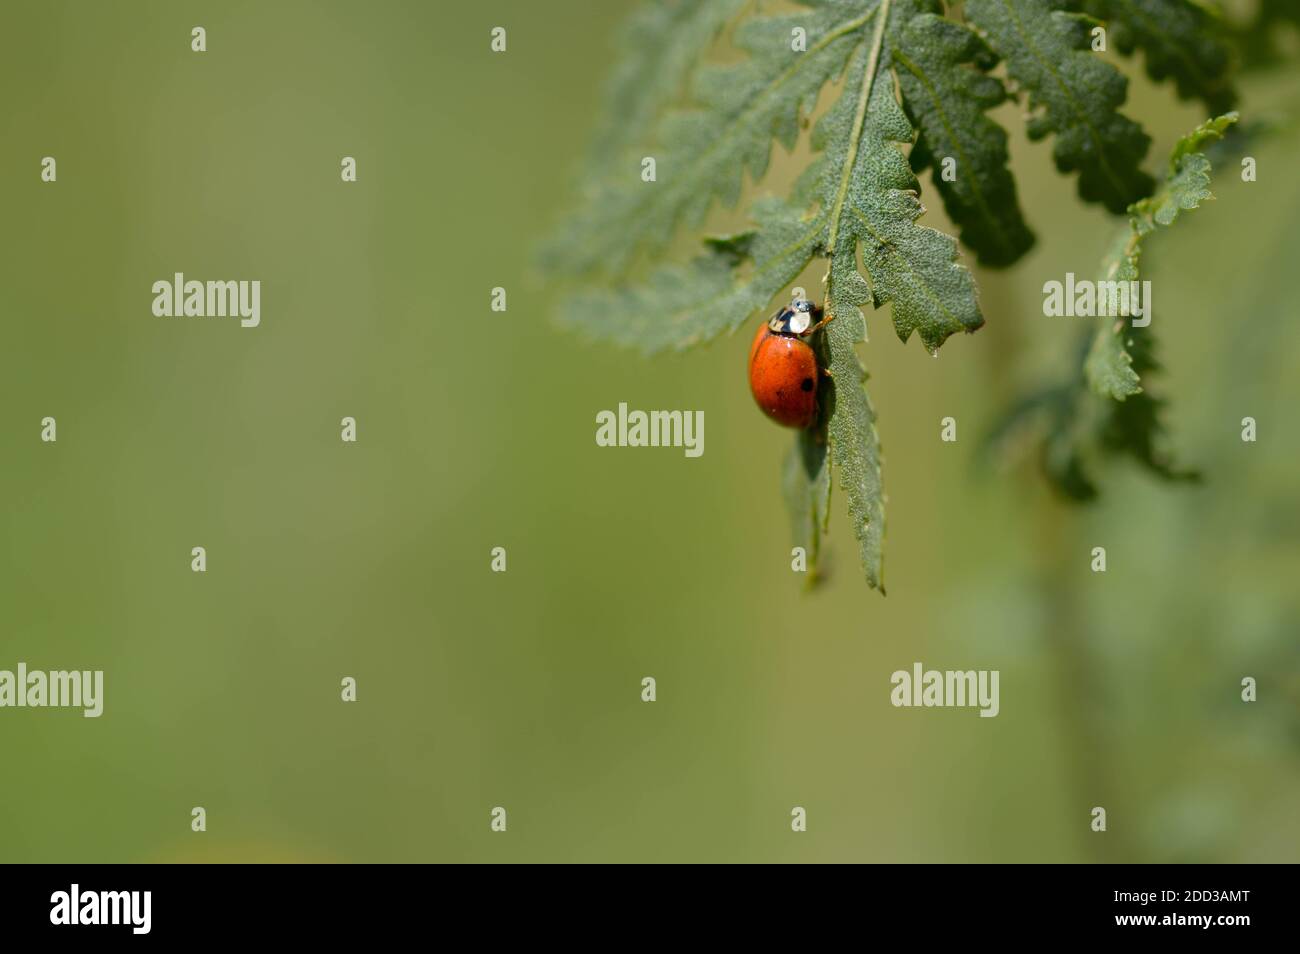 Coccinelle sur une feuille verte dans la nature, fond vert, petit insecte rouge avec des taches noires. Banque D'Images